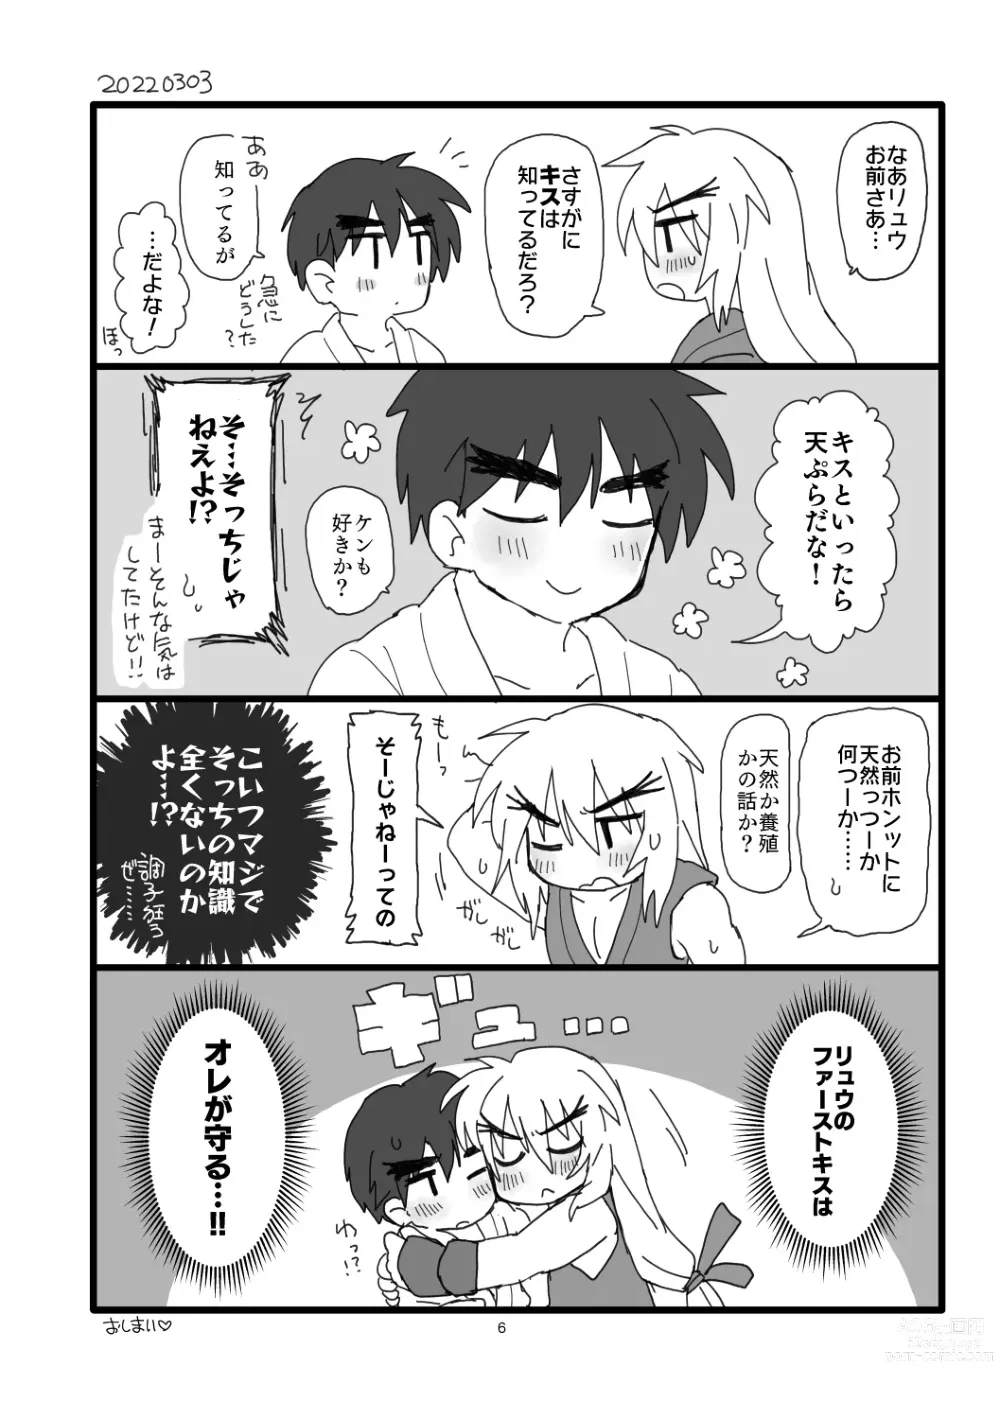 Page 5 of doujinshi Kobushi Kiss